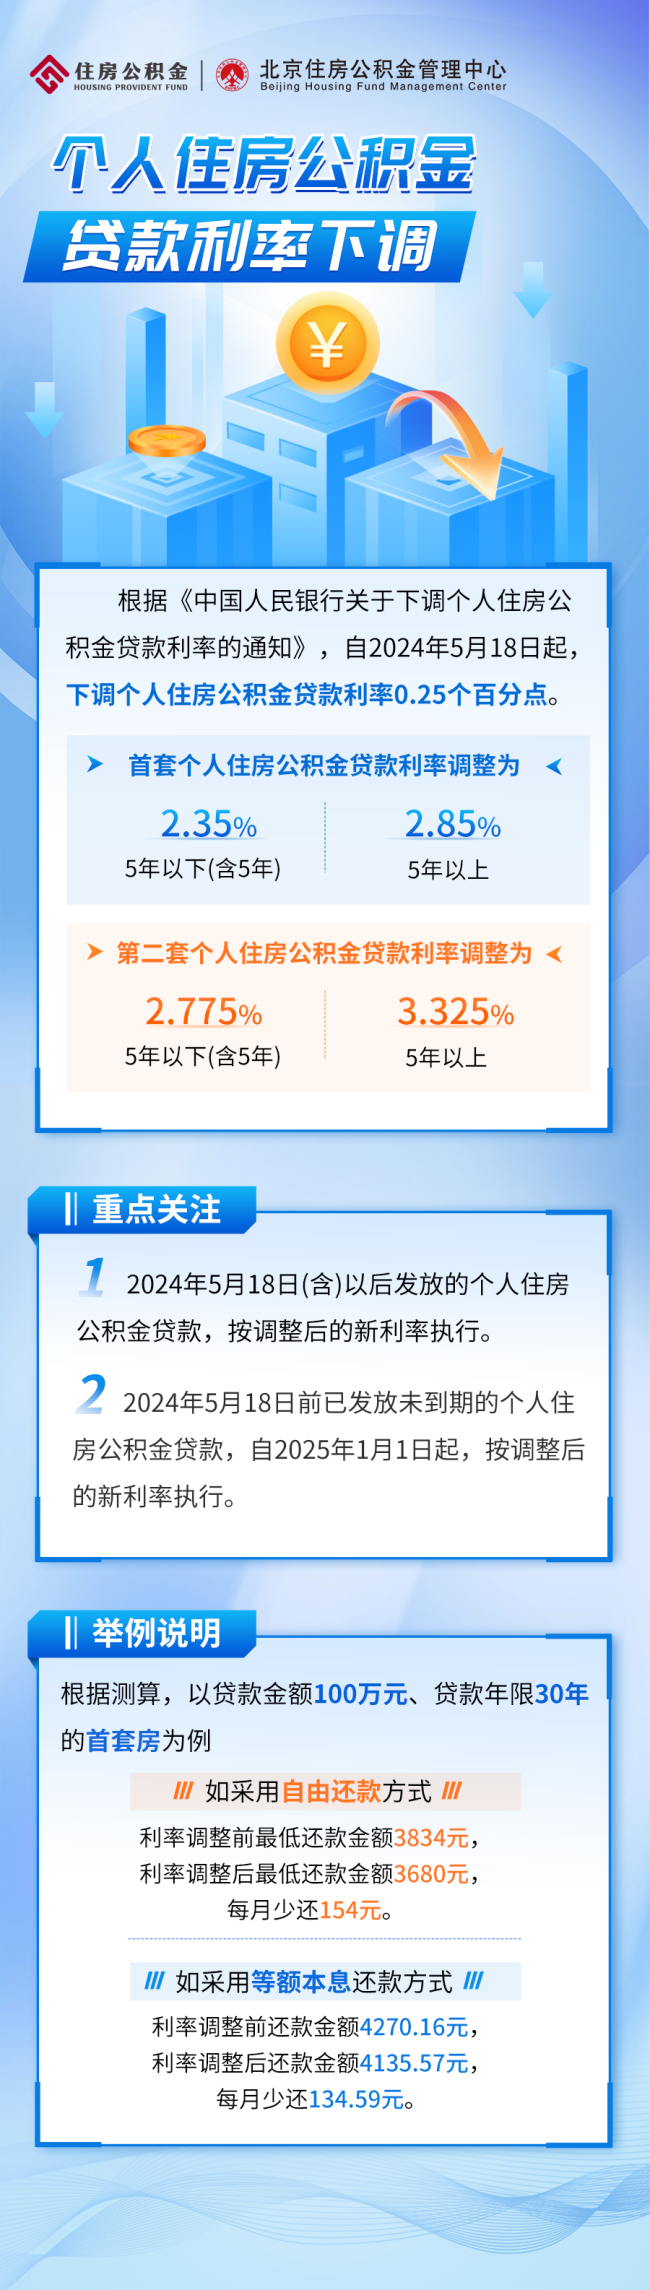 北京个人住房公积金贷款利率 下调0.25个百分点